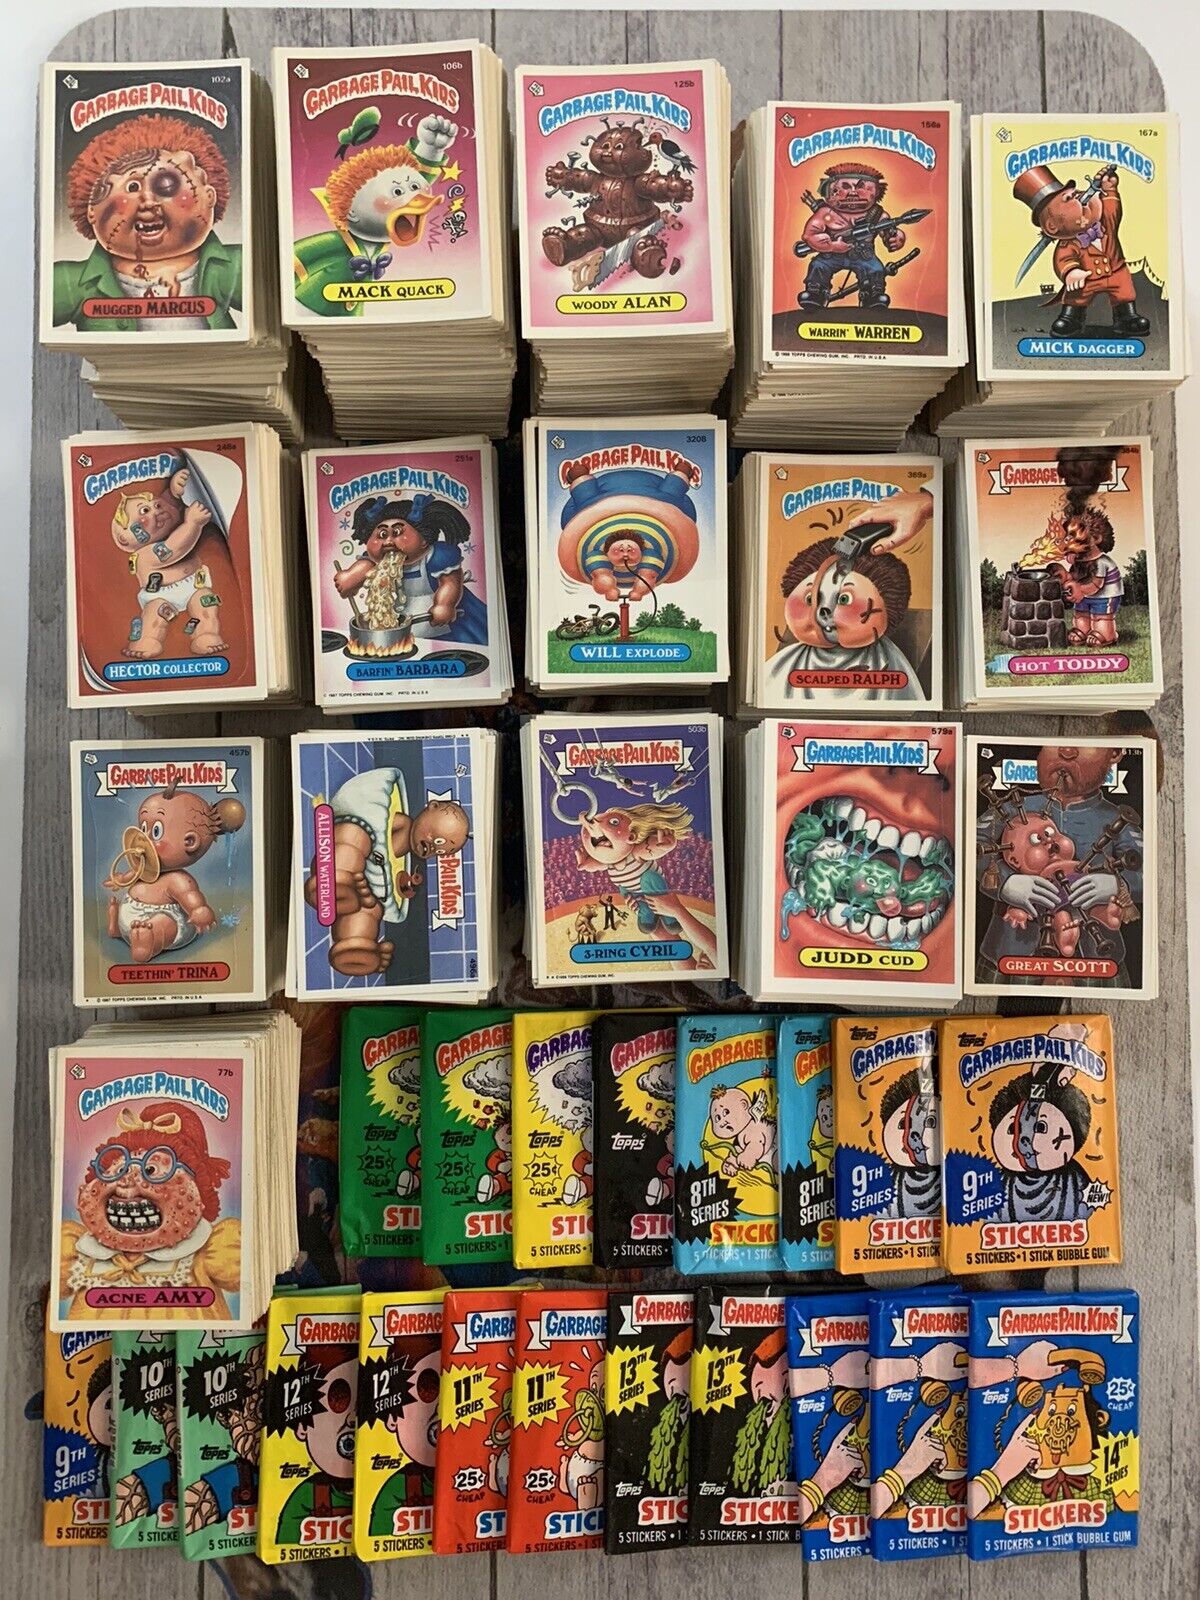 GPK Garbage Pail Kids Vintage Original Series Grab Bags 50 Card Lot Plus Pack